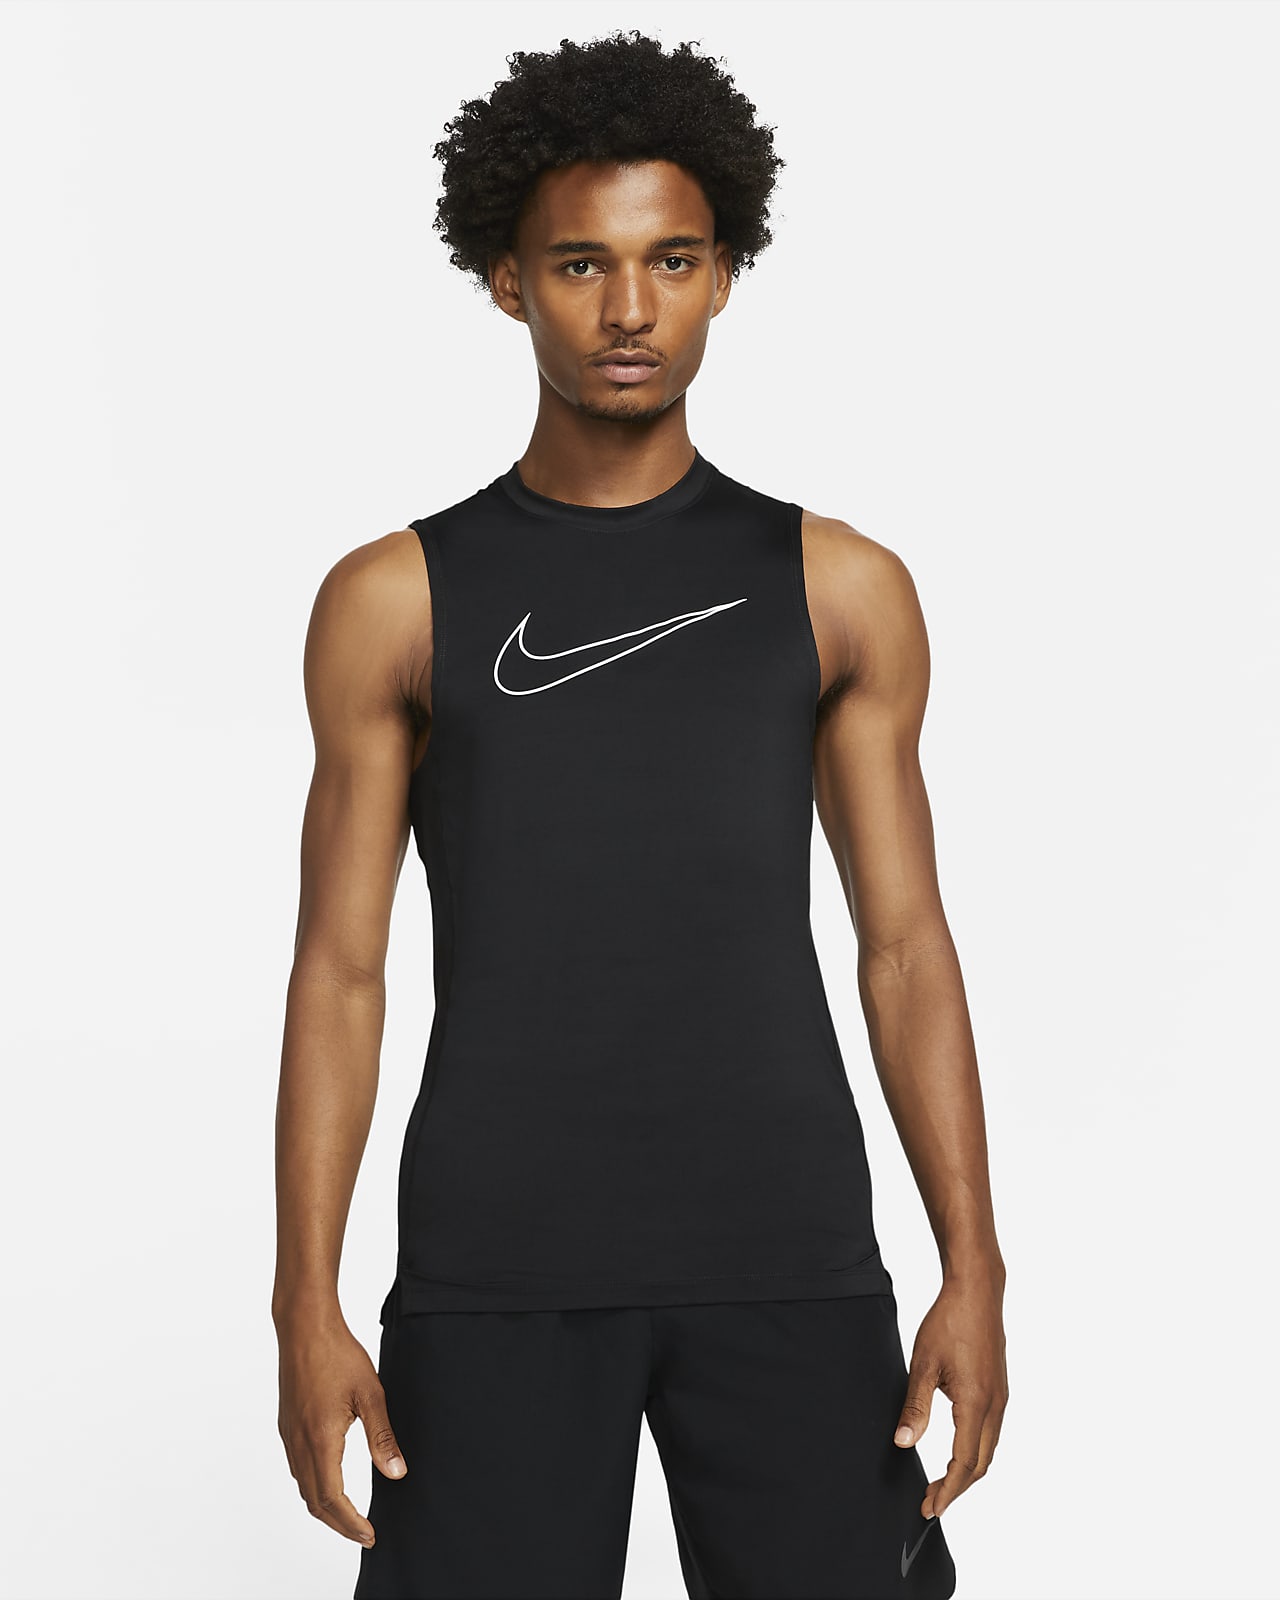 Camiseta sin mangas y ajustado para Nike Pro Nike.com